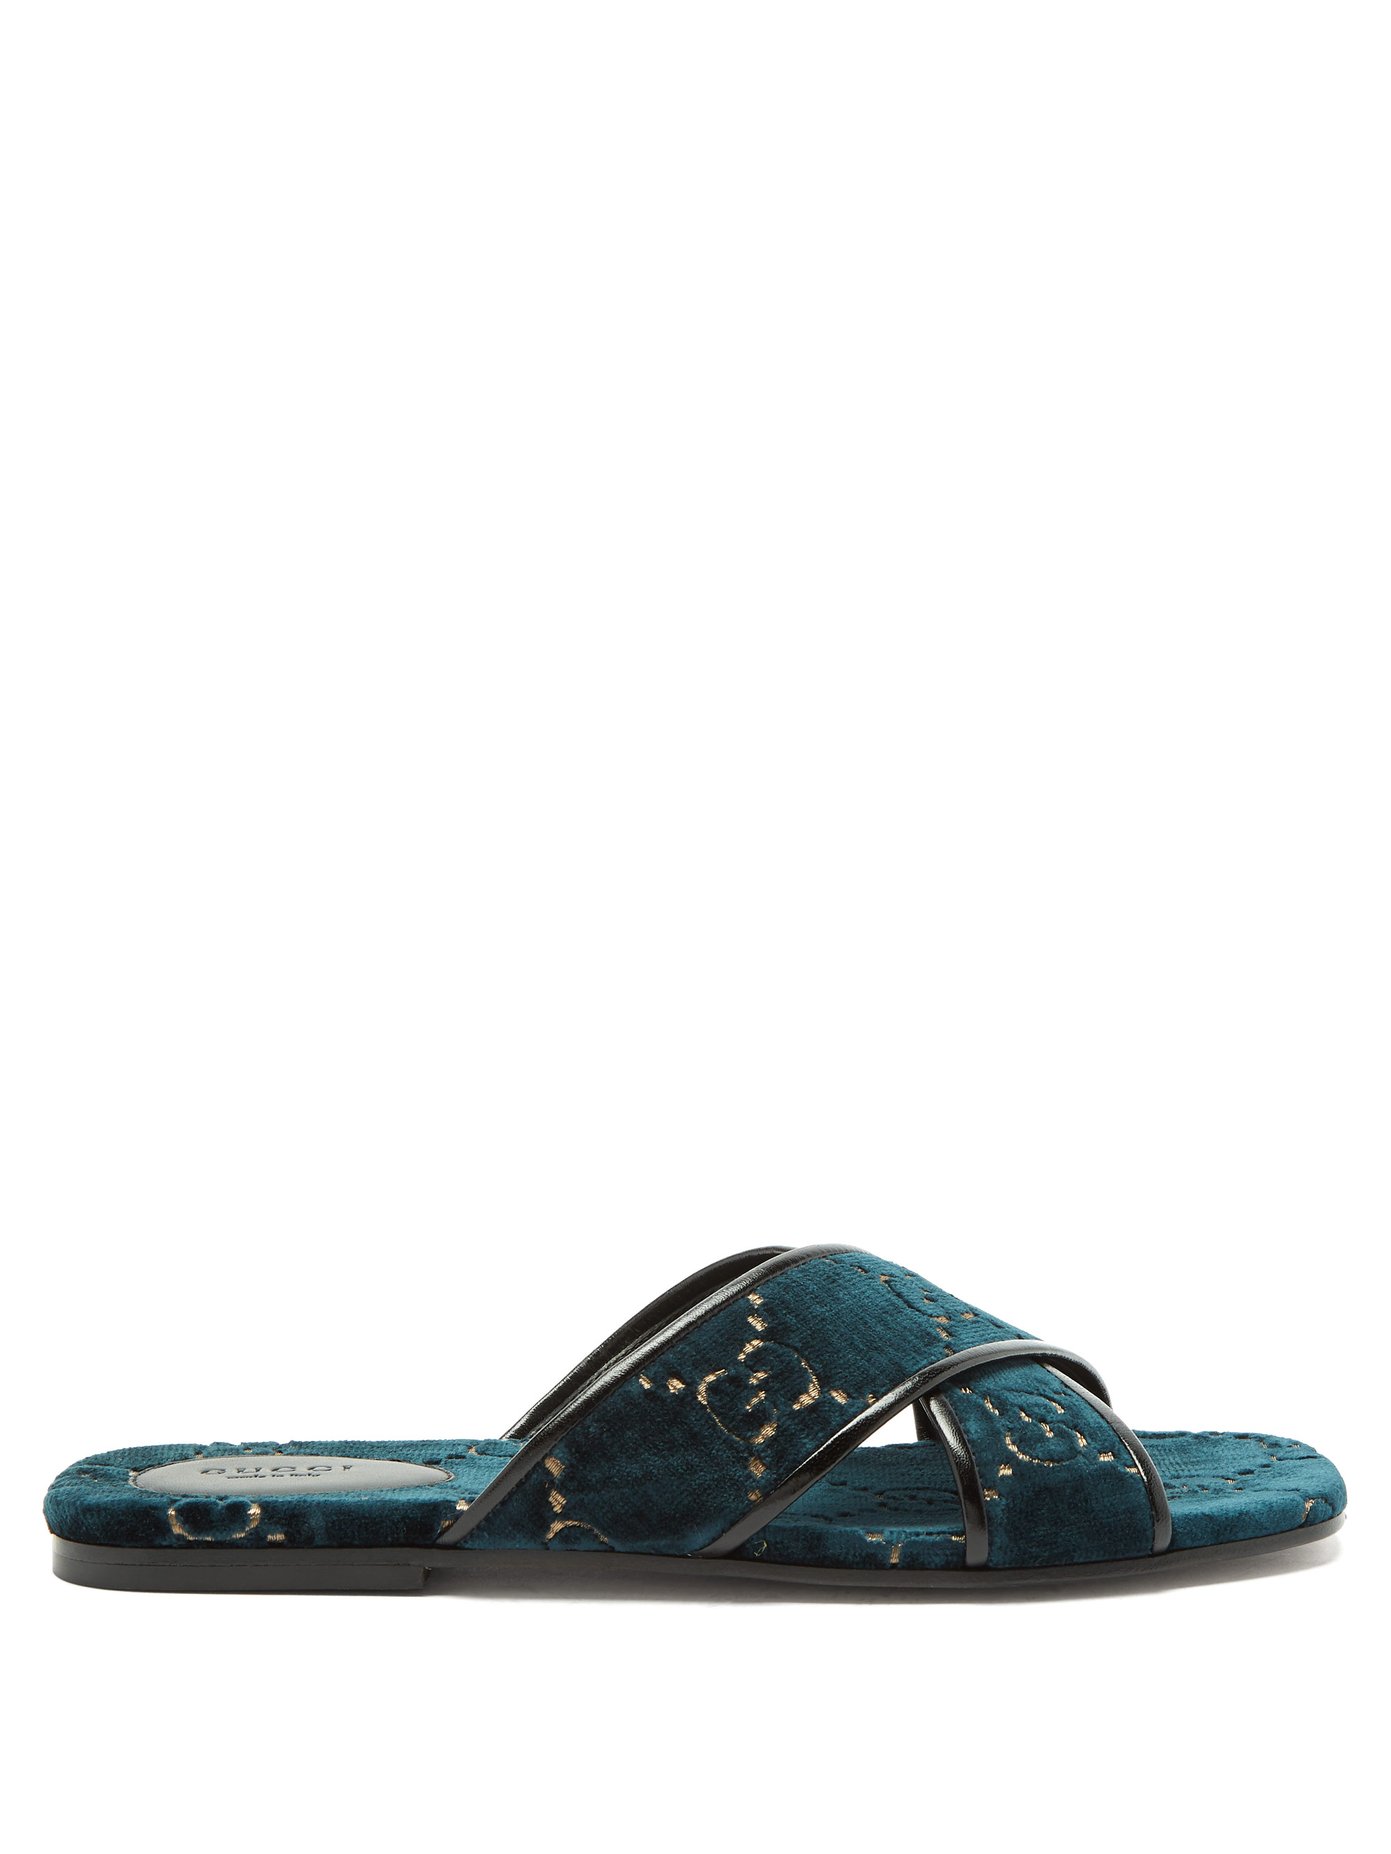 GG velvet slide sandal | Gucci 